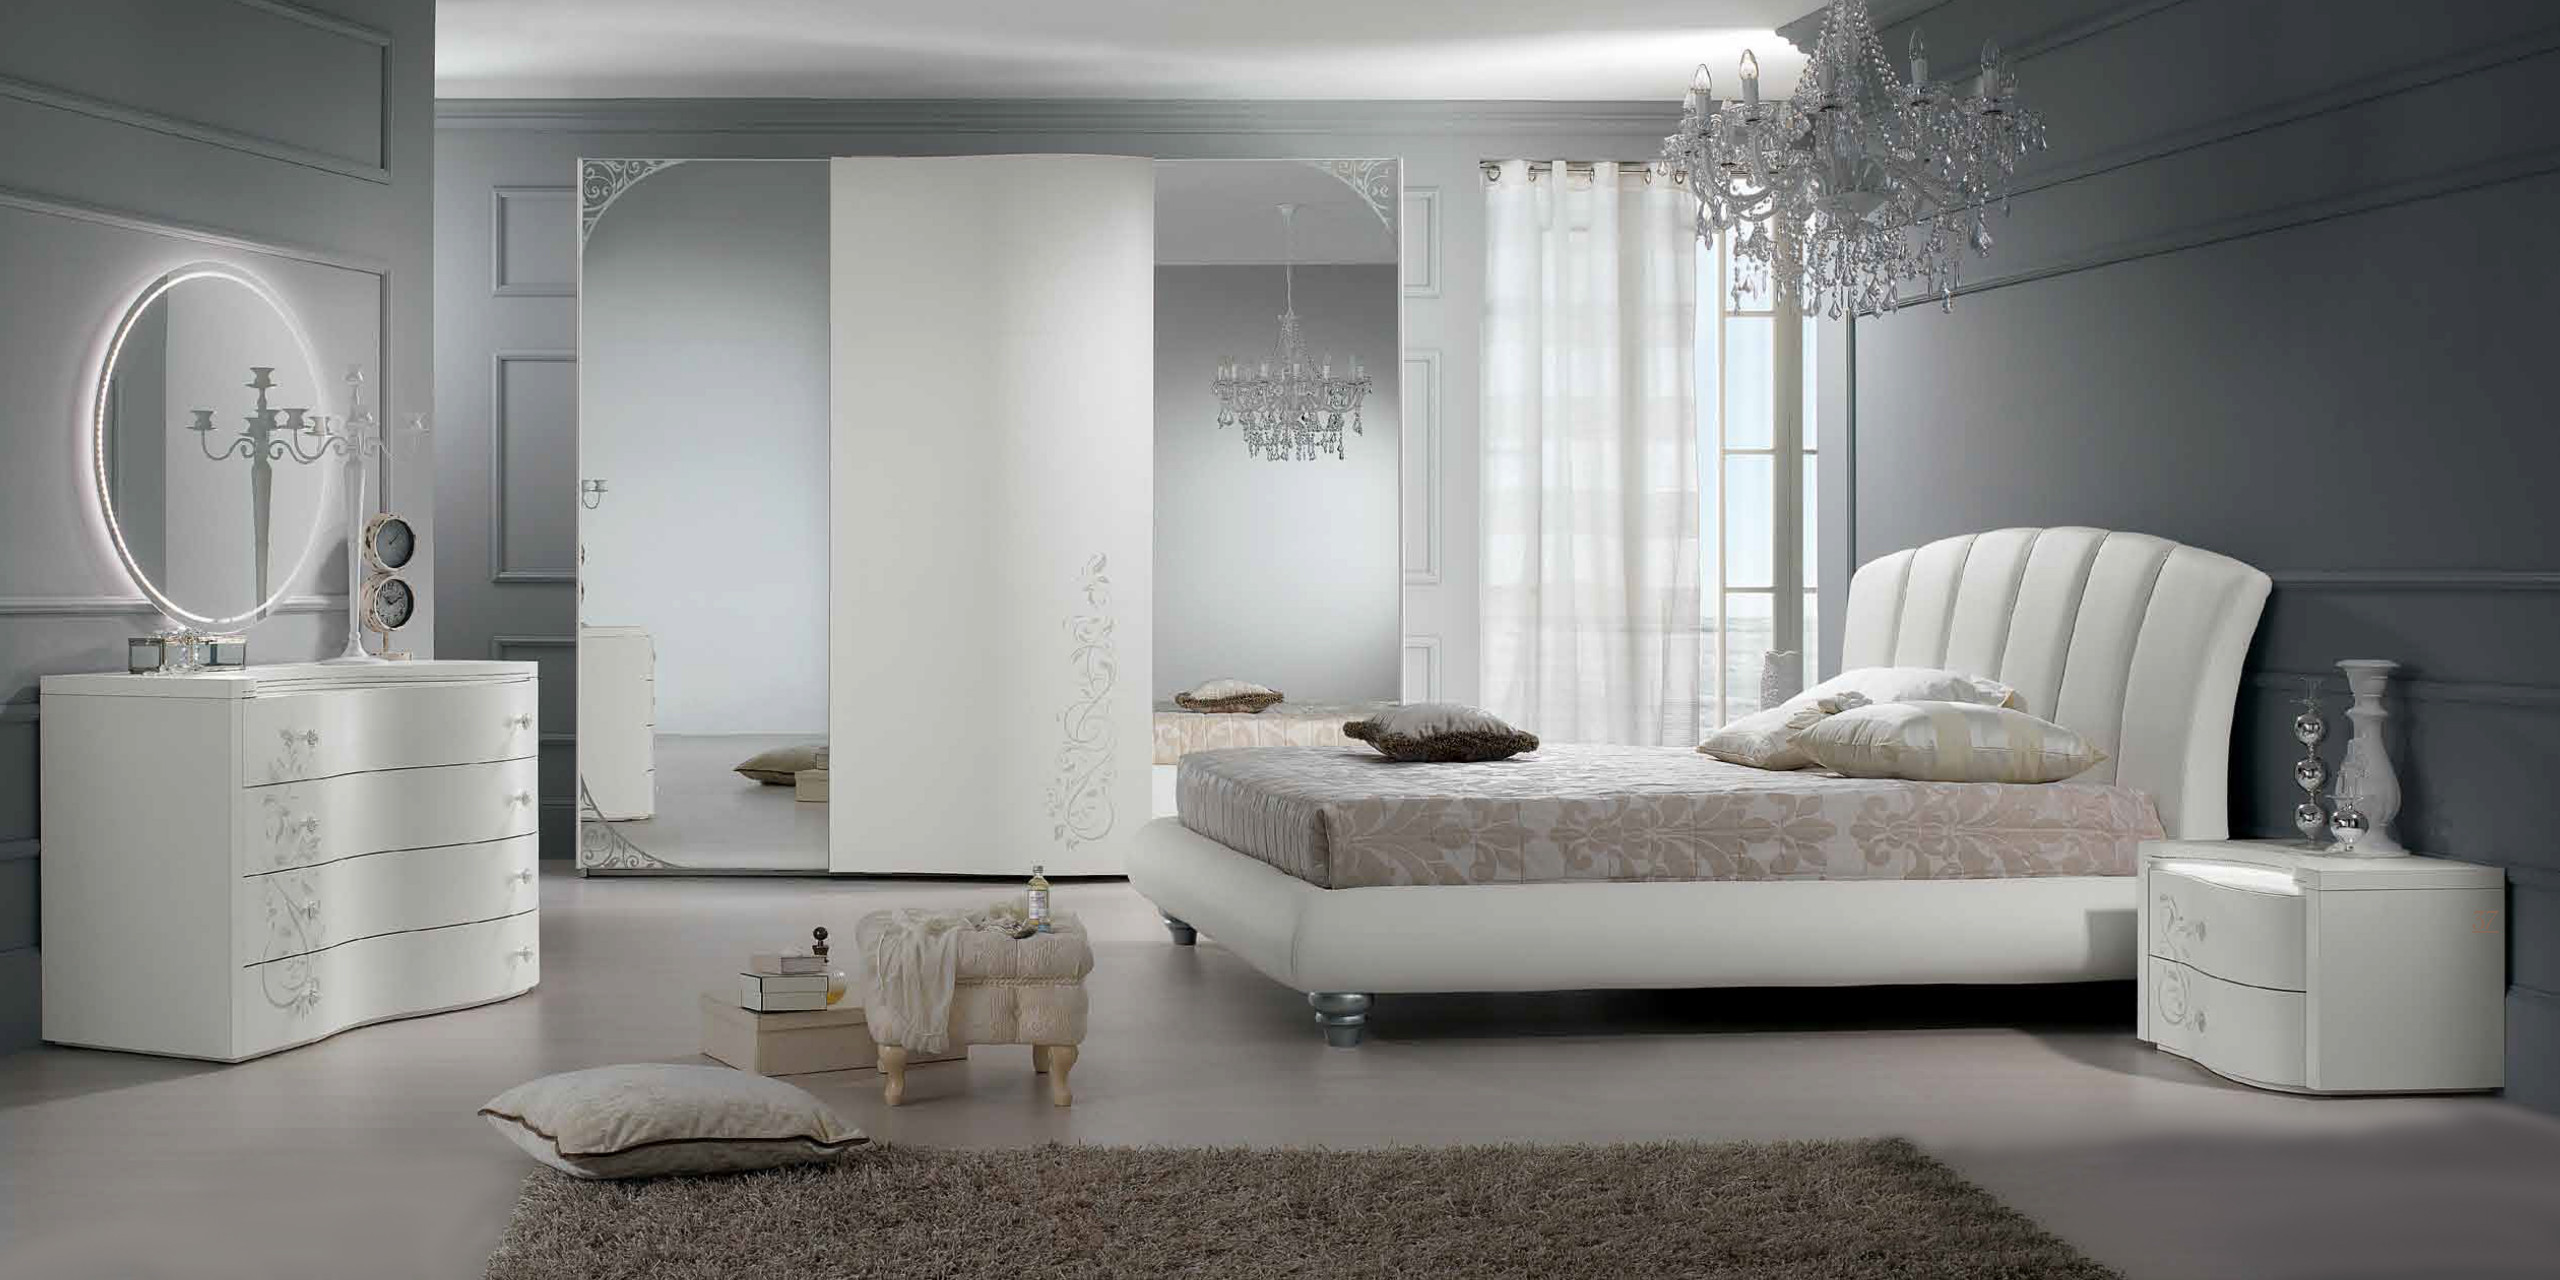 Upholstered Glamorous Bed - Photos & Ideas | Houzz